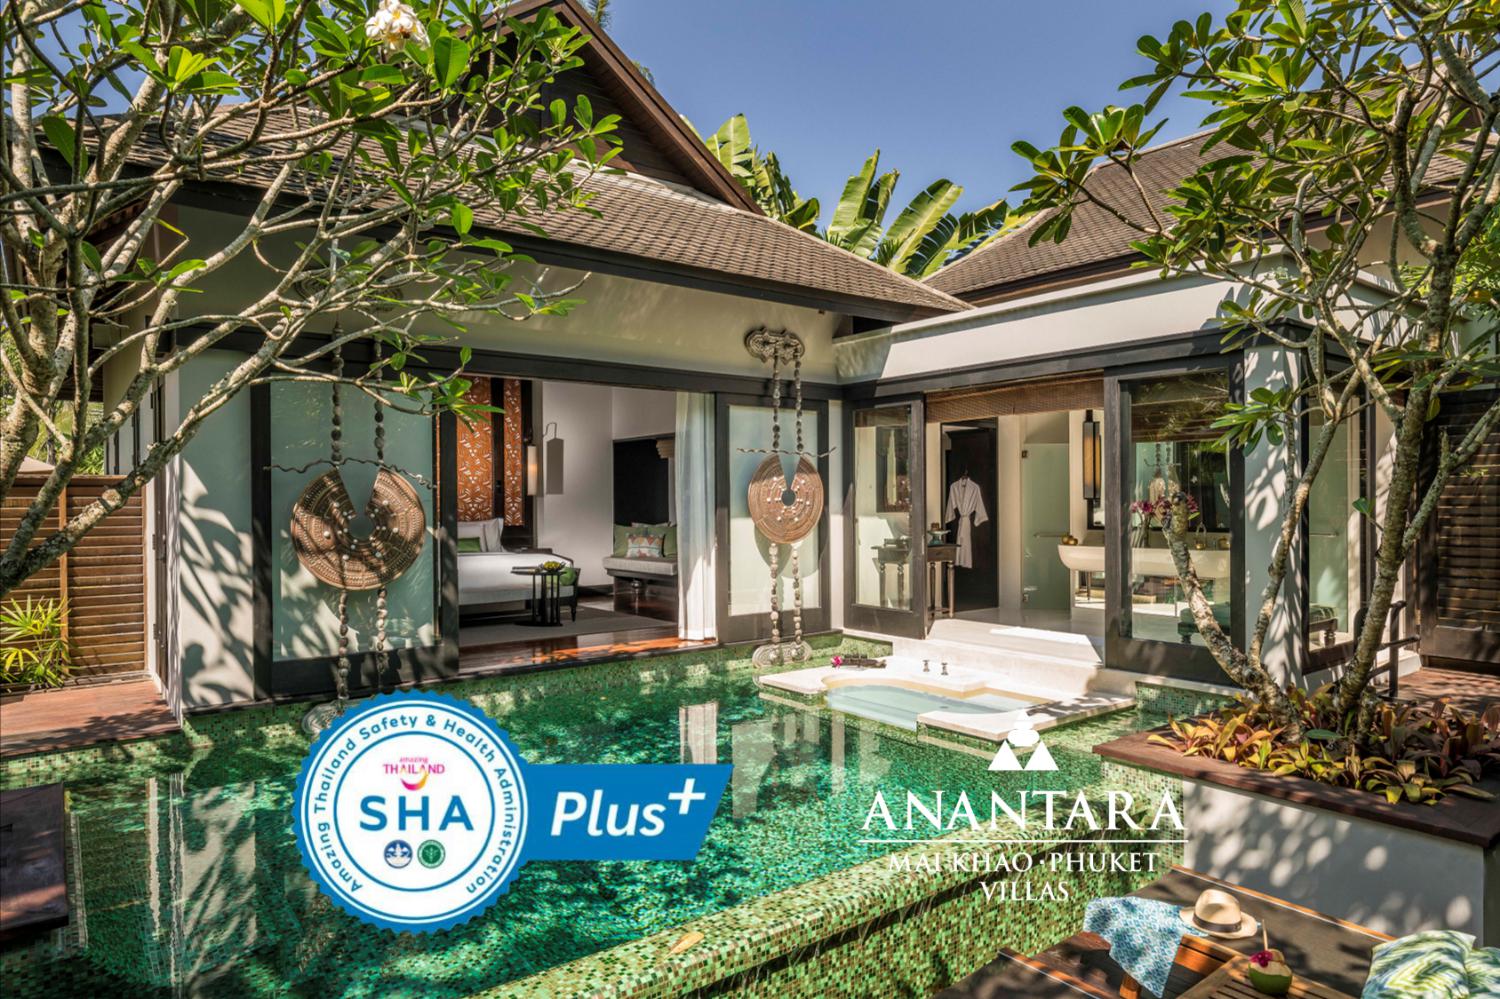 Anantara Mai Khao Phuket Villas - Image 1